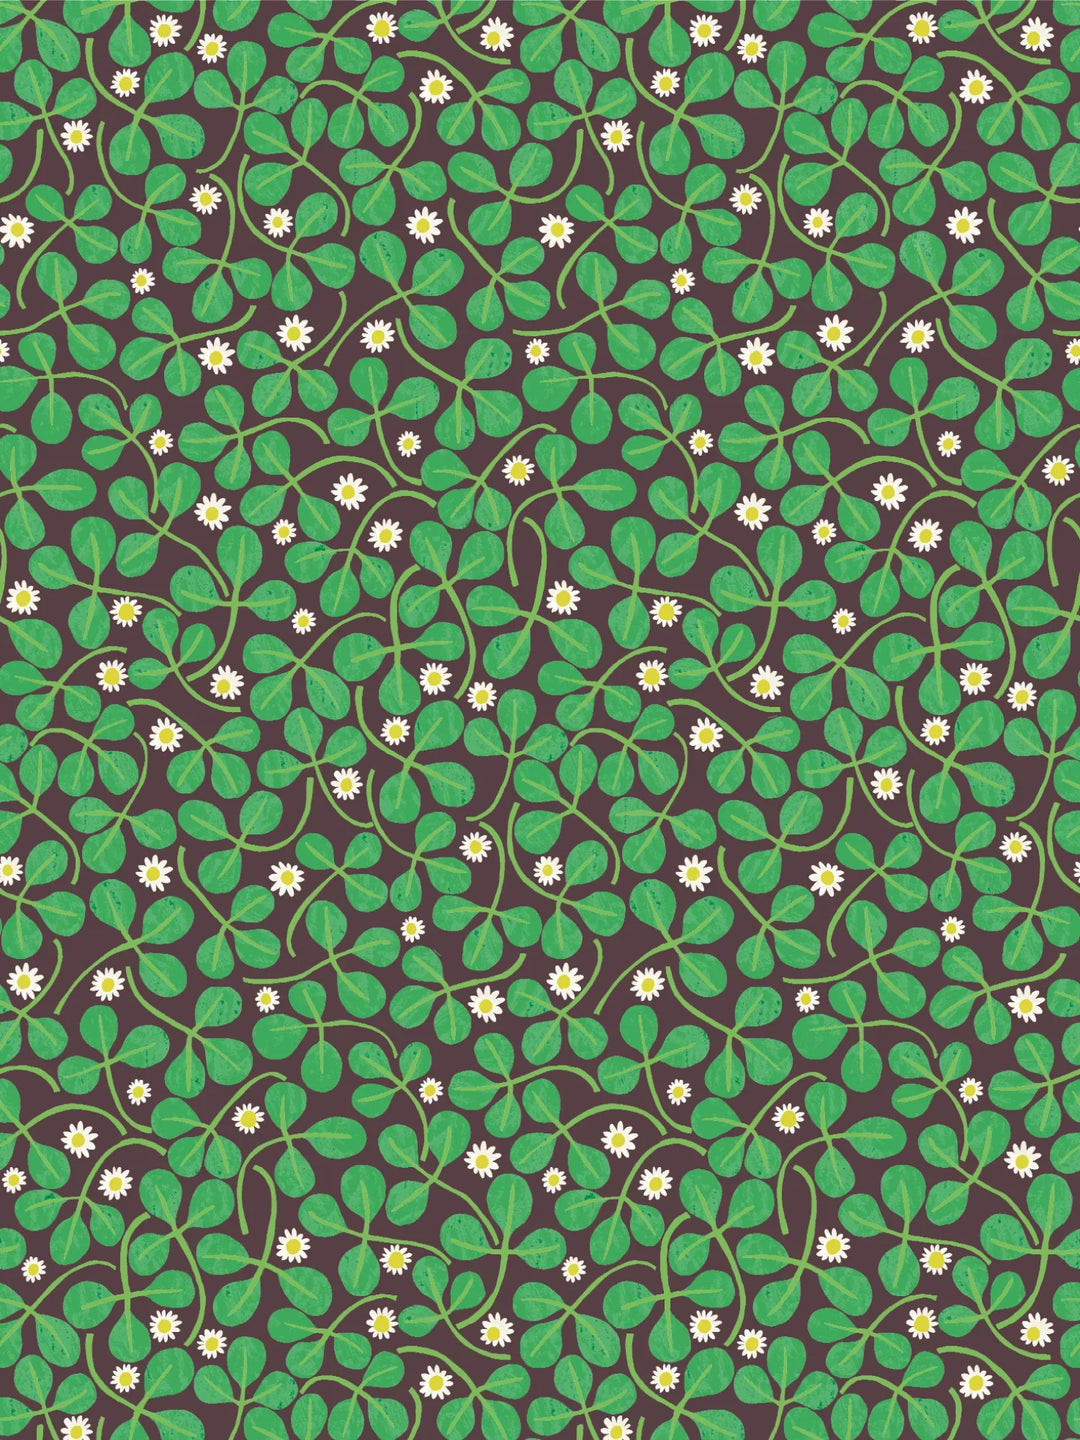 Clover Wallpaper - Emerald